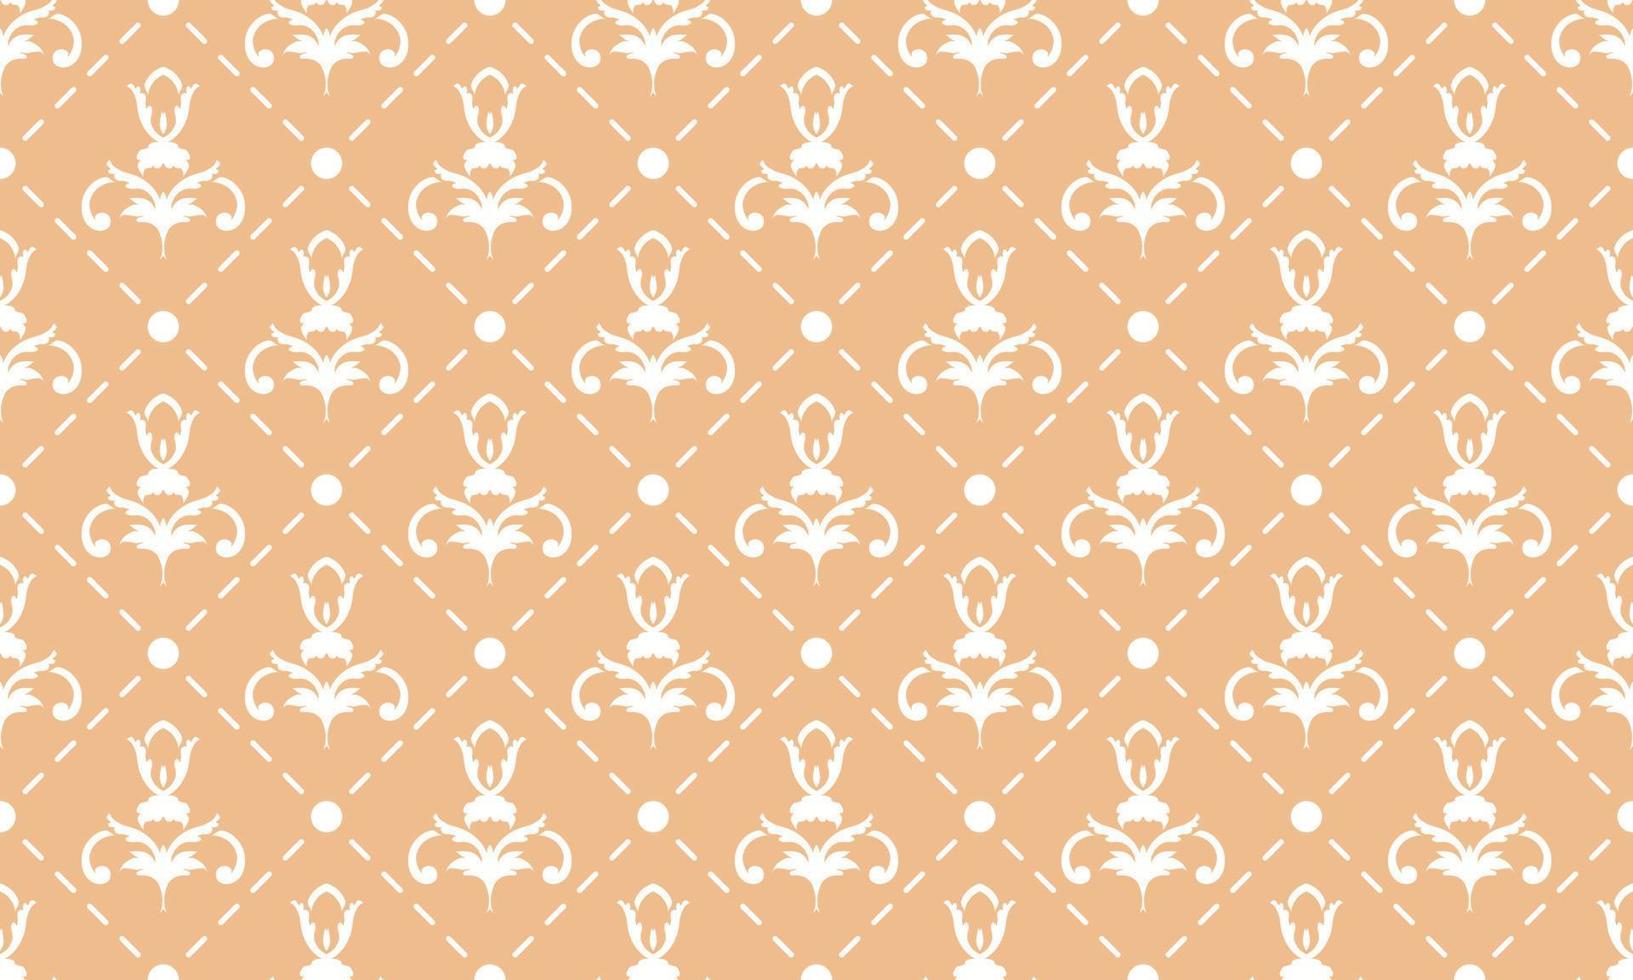 Damask Fleur de Lis pattern dress vector seamless background wallpaper